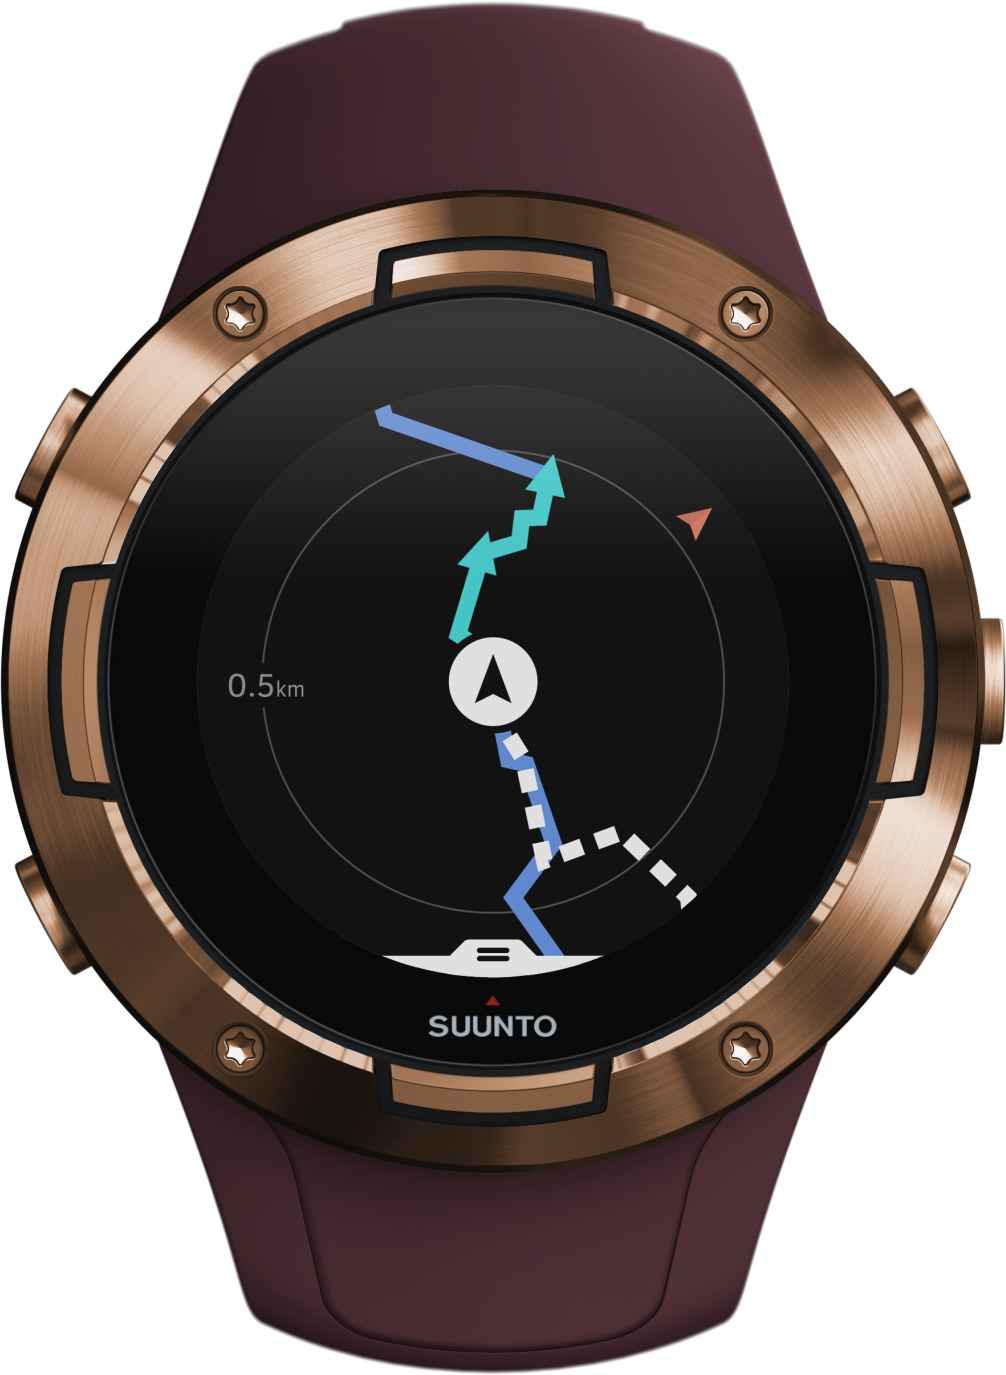 Multisport GPS watch